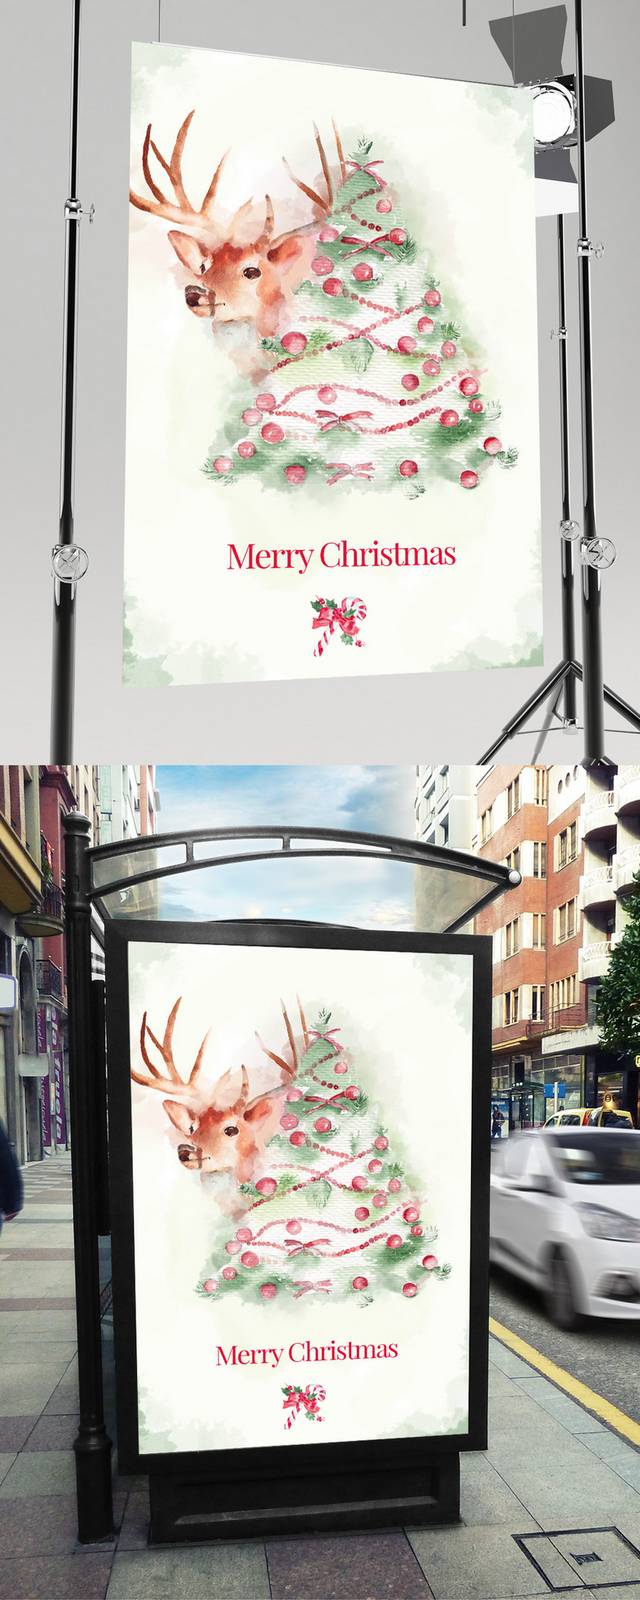 清新创意圣诞节海报下载